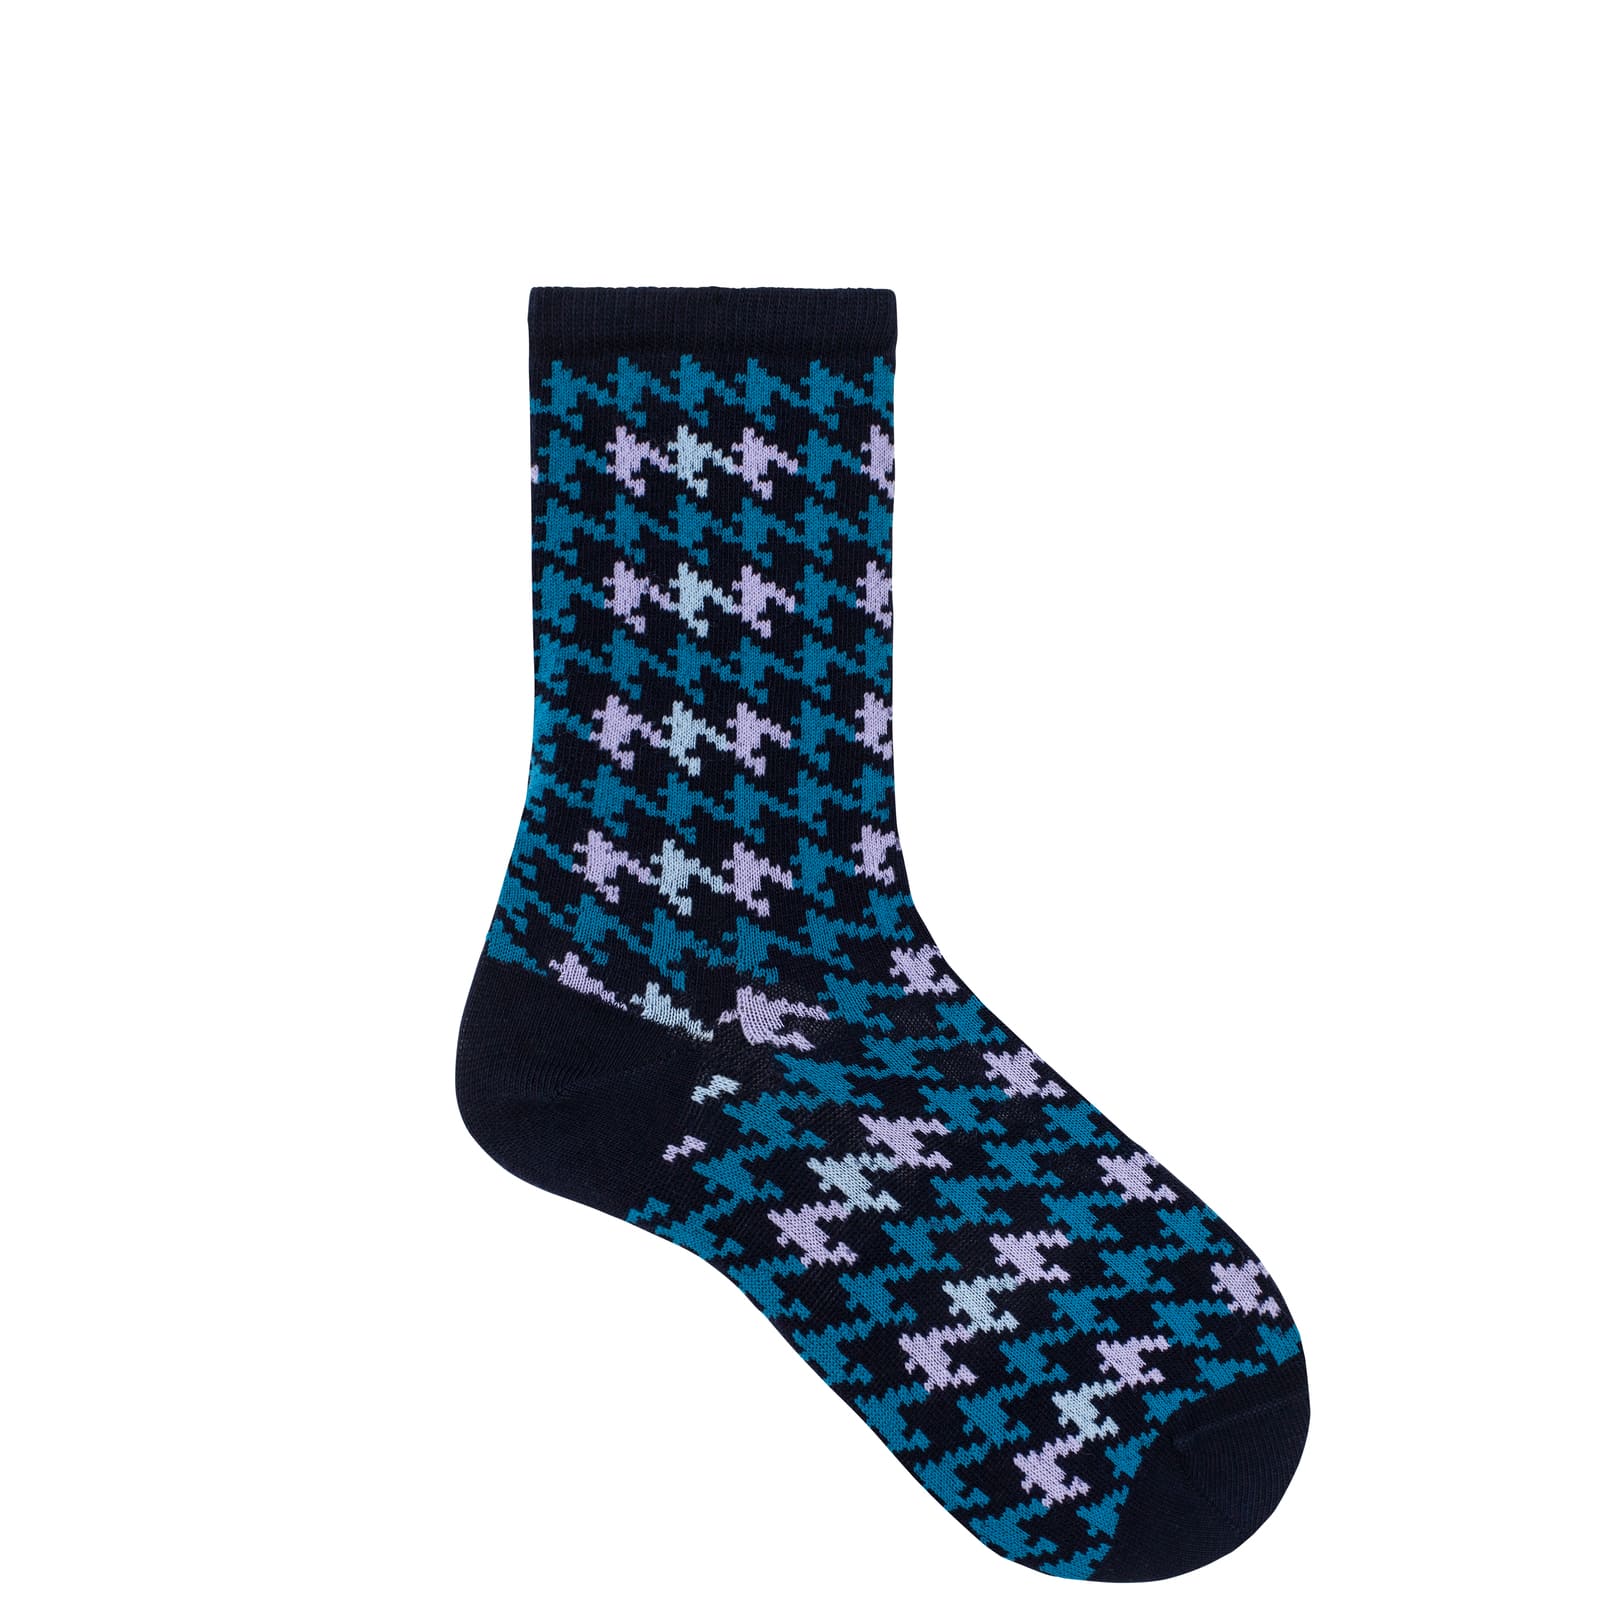 HUDSON Damen HOUNDSTOOTH -  35/38 - Damen Socken mit angesagtem Hahnentritt-Muster - Marine (Blau)